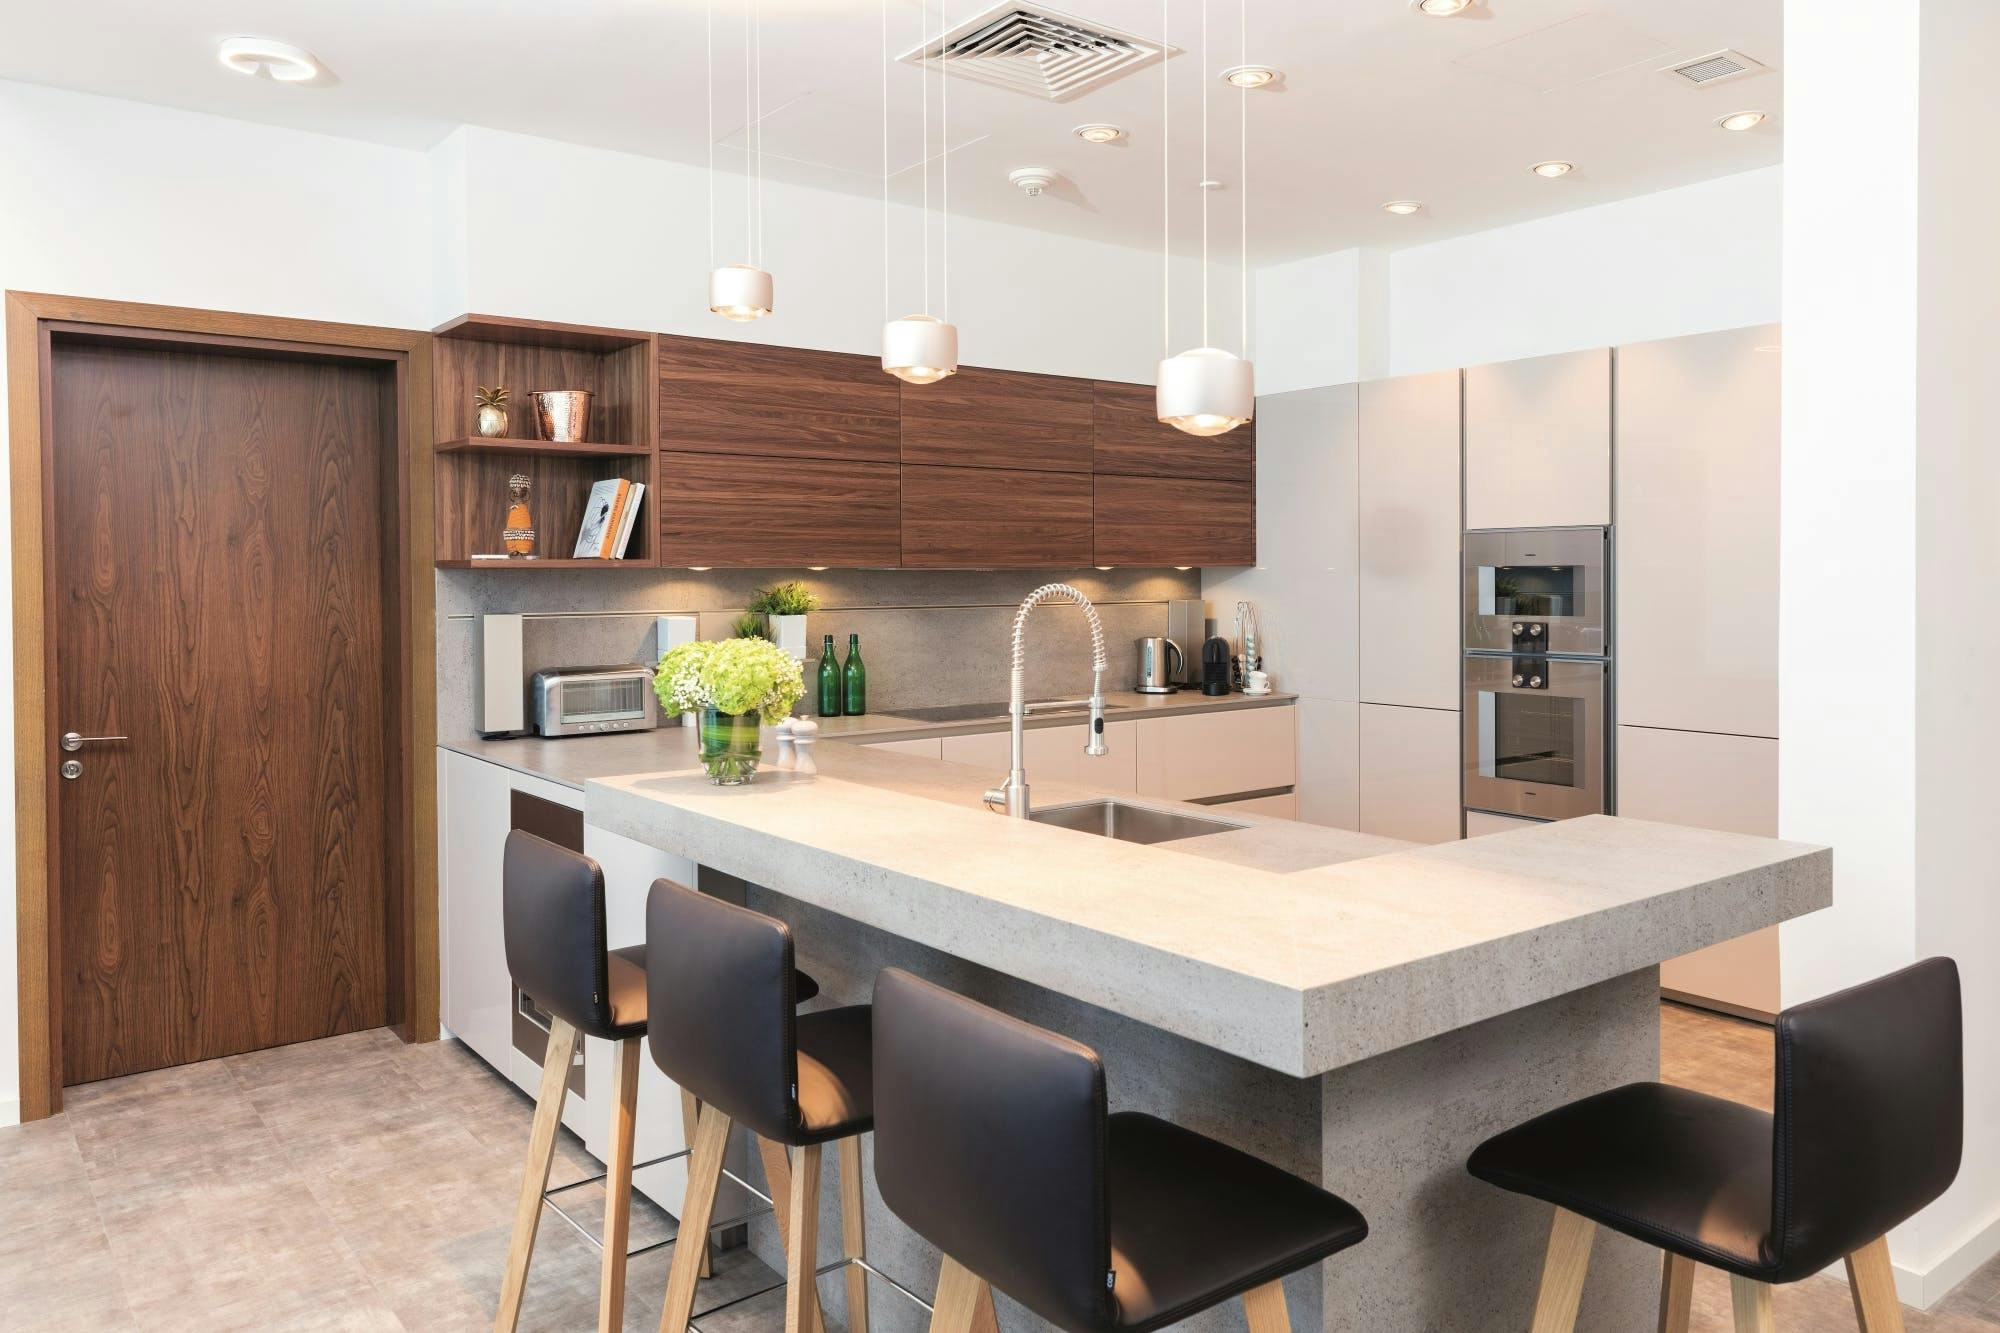 Imagen número 79 de La cocina futurista de Oliver Goettling: diseño y funcionalidad en un espacio mínimo